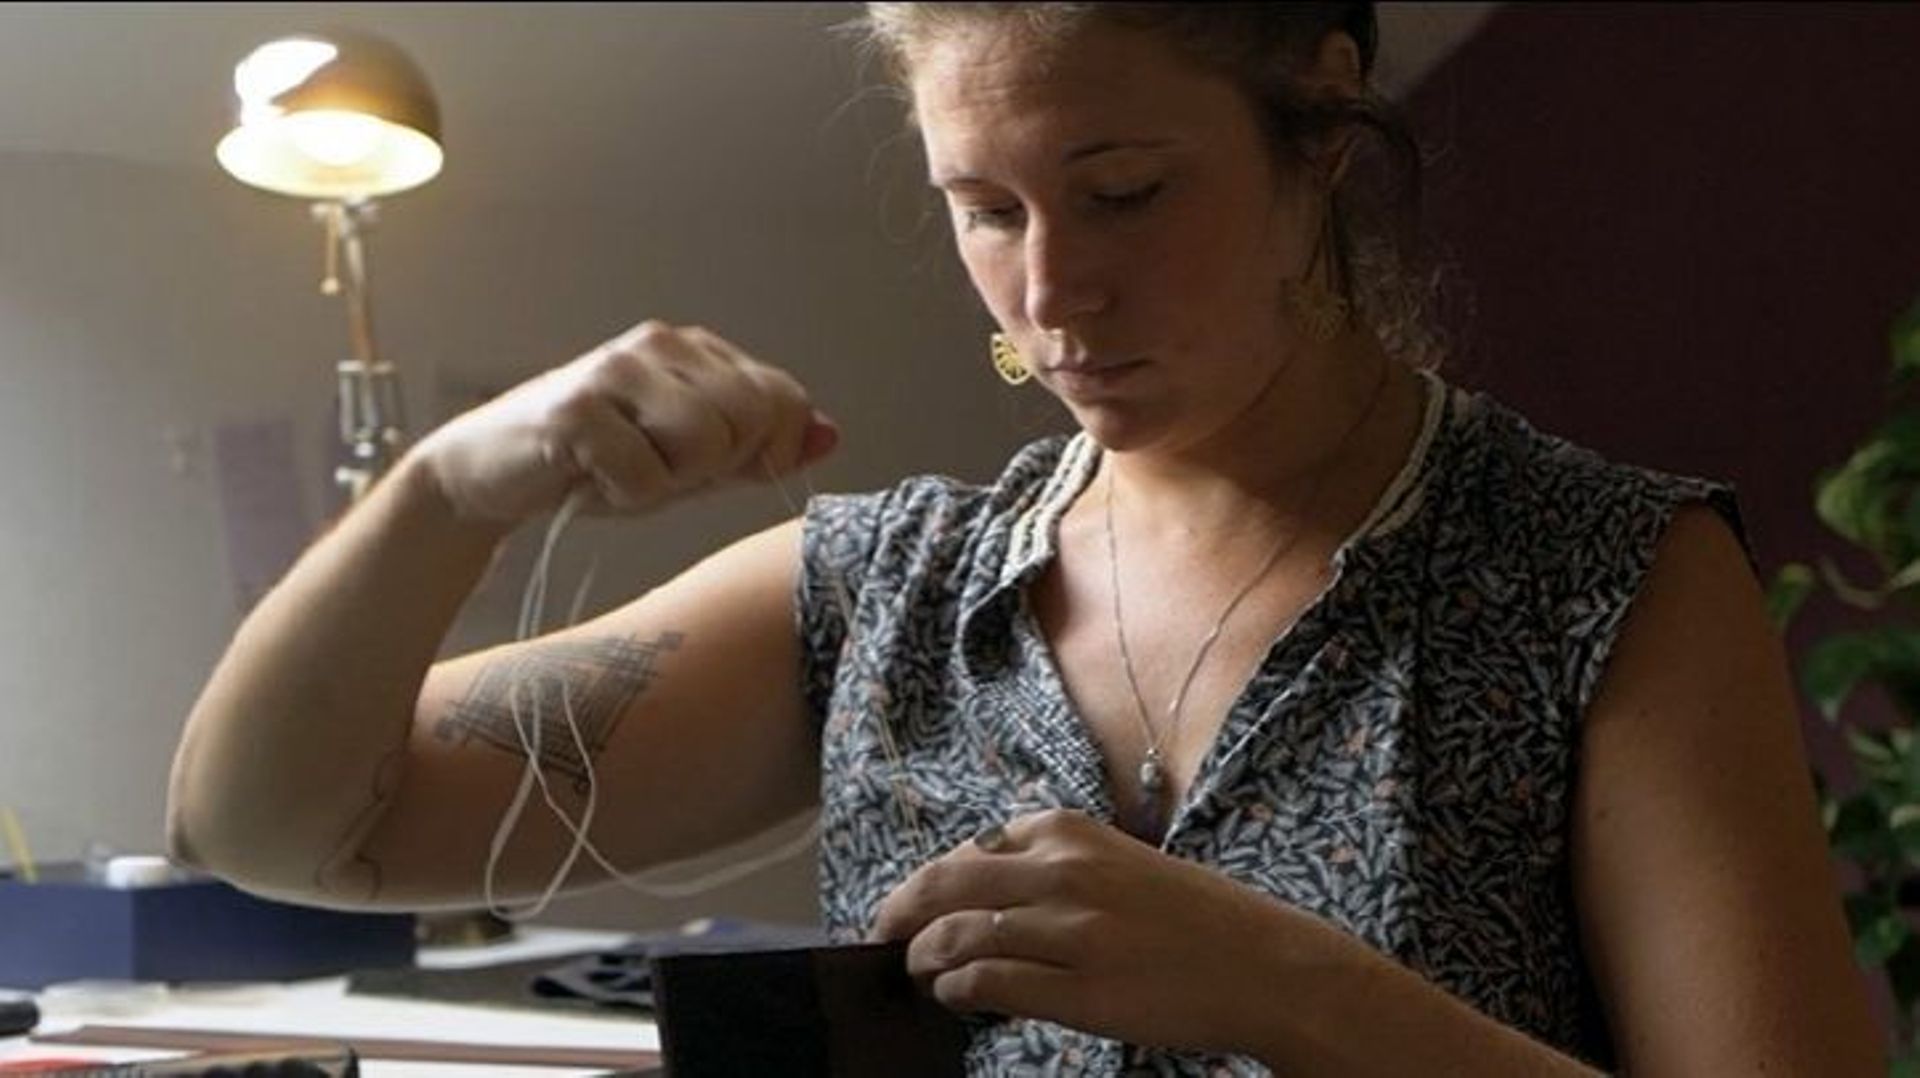 Du fil, une aiguille… Les outils qu’utilise Gaëlle lui permettent de travailler le cuir partout et tout le temps, une flexibilité en accord avec ses idéaux de vie